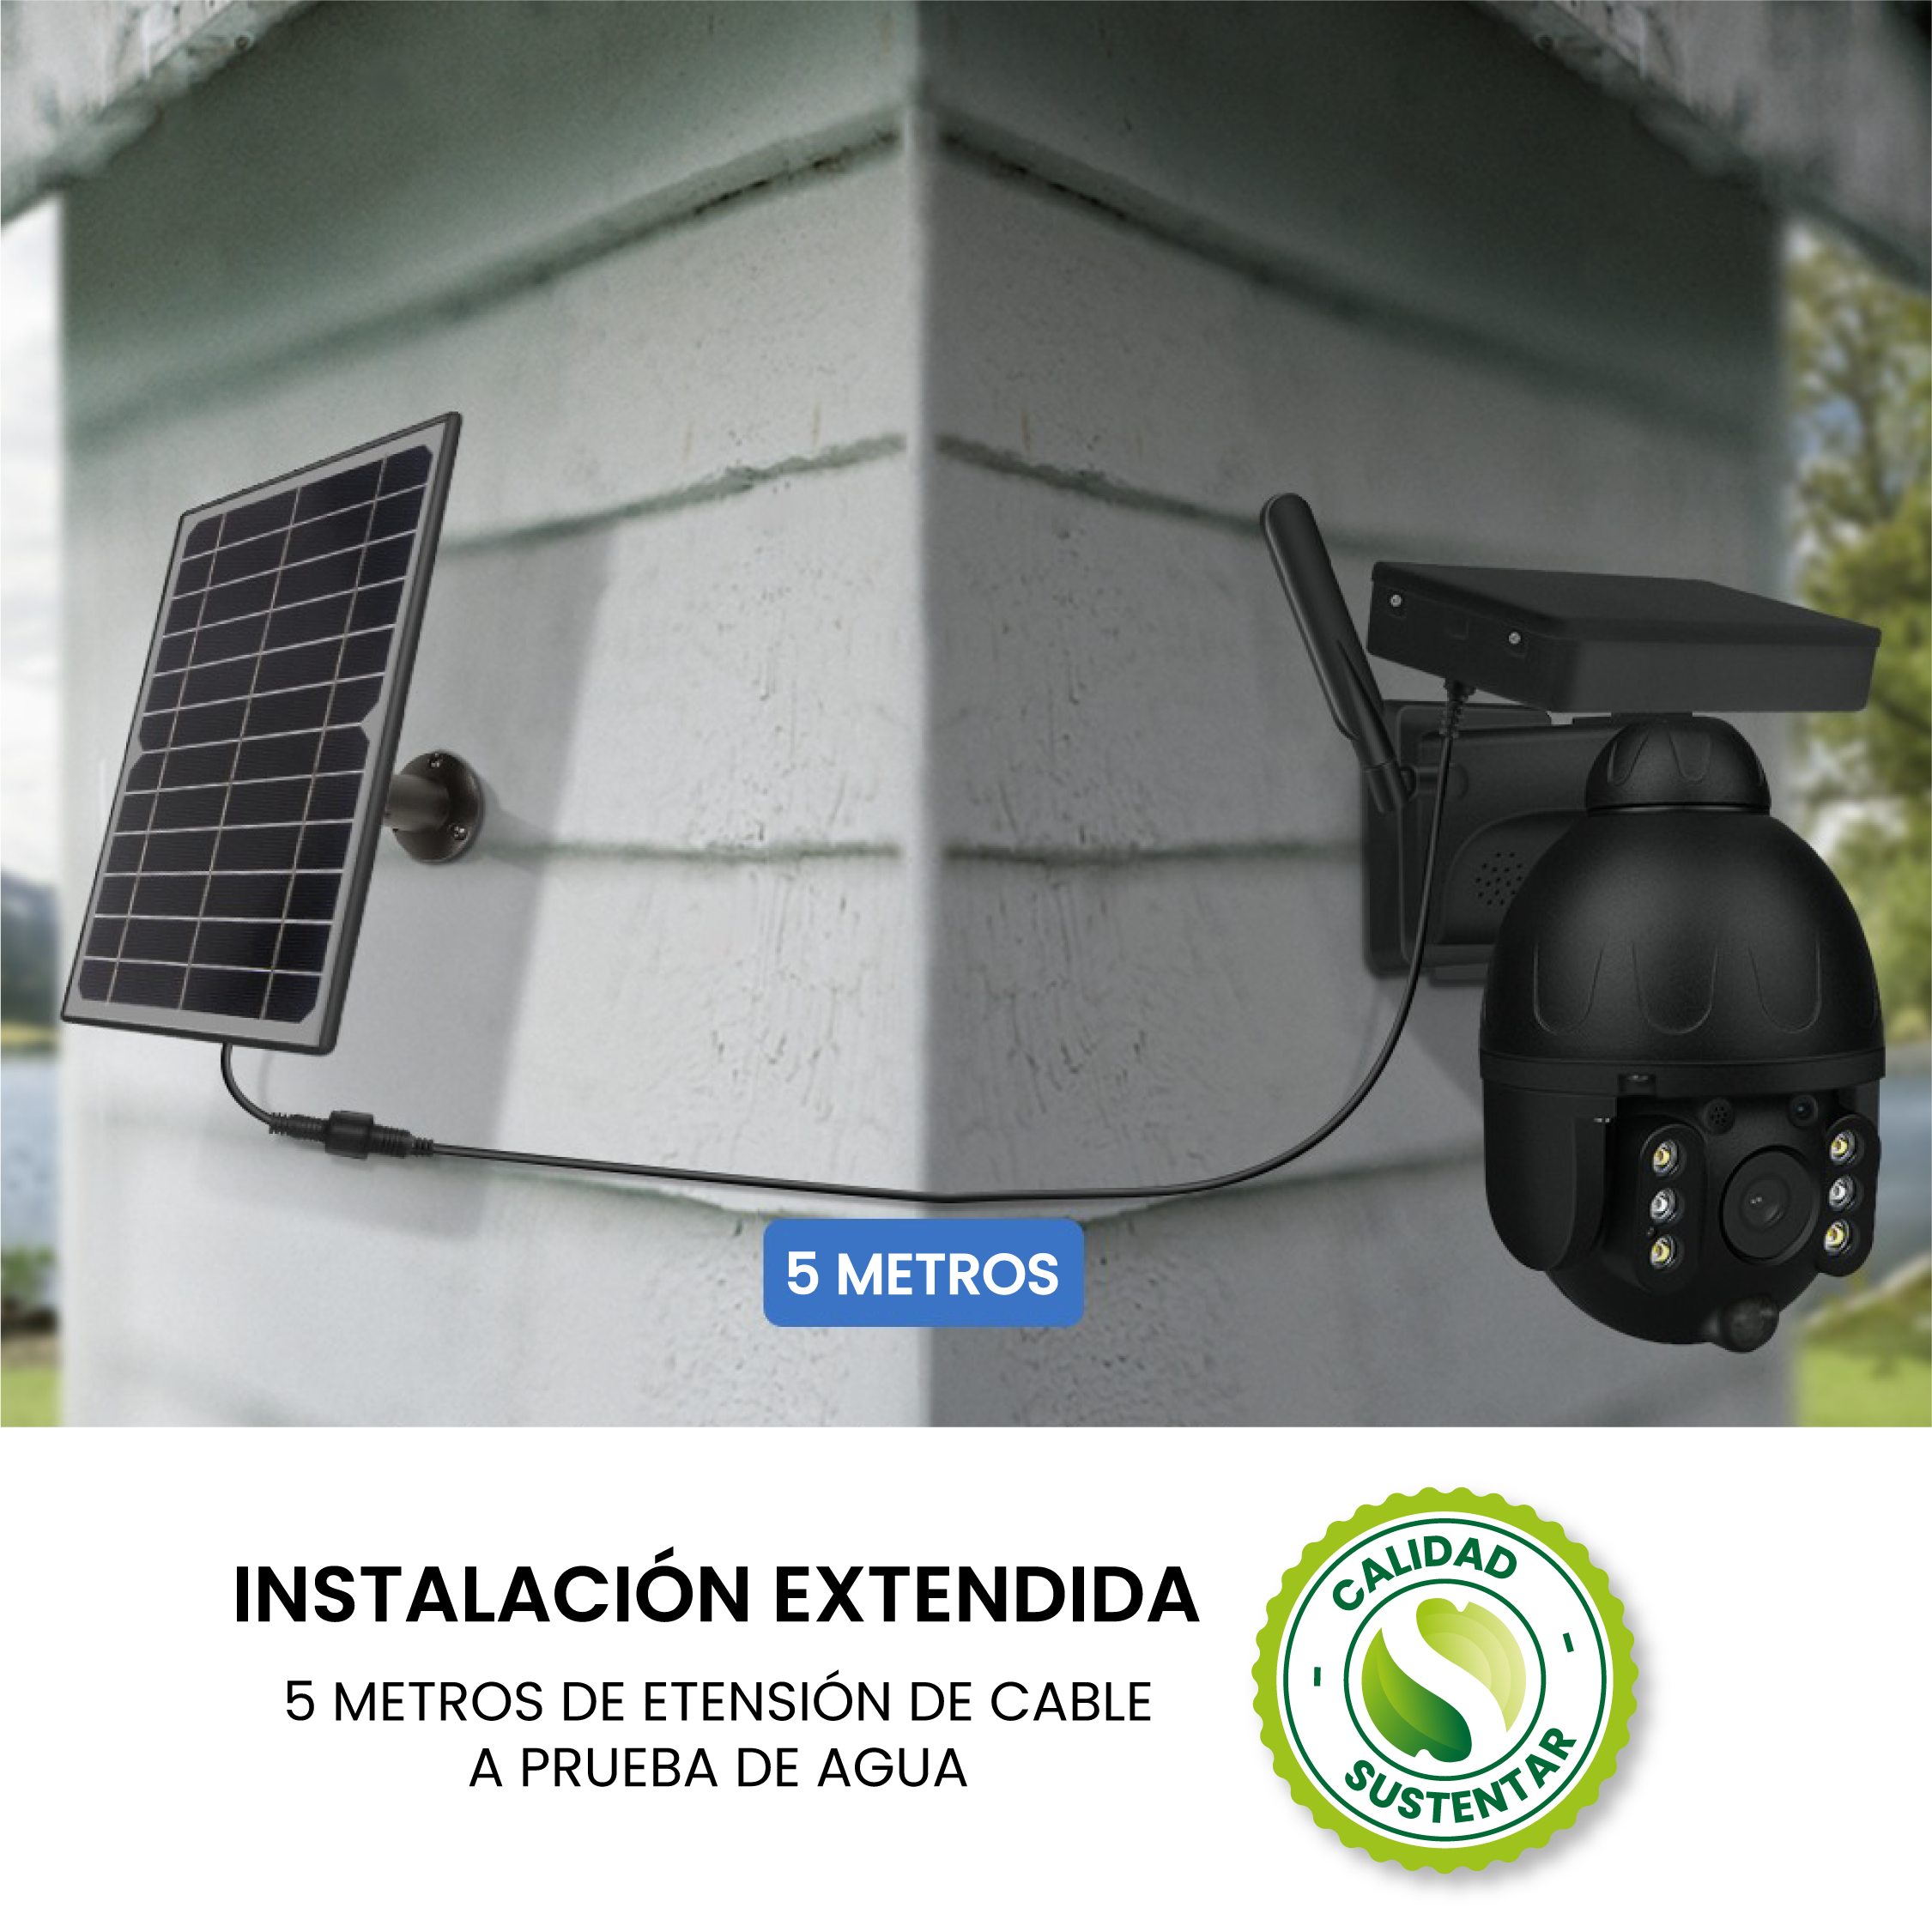 Utopia Paraguay - 🔥Cámara SOLAR 4G 🔥🇵🇾 mantén la seguridad